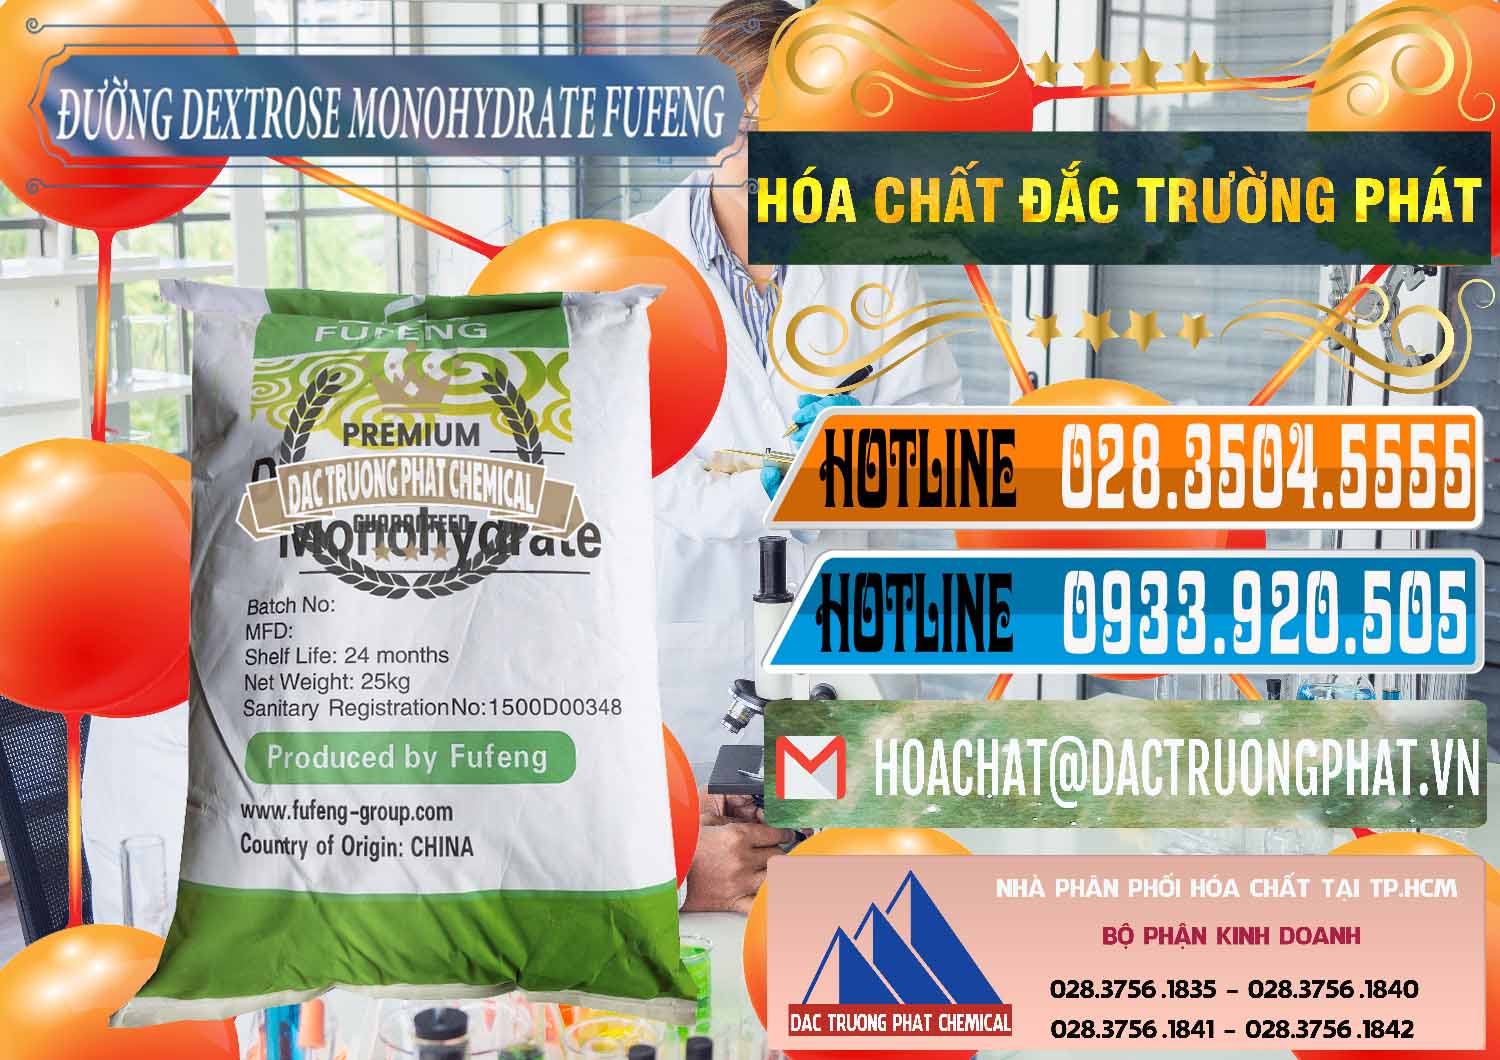 Bán _ cung cấp Đường Dextrose Monohydrate Food Grade Fufeng Trung Quốc China - 0223 - Cty chuyên cung cấp - kinh doanh hóa chất tại TP.HCM - stmp.net